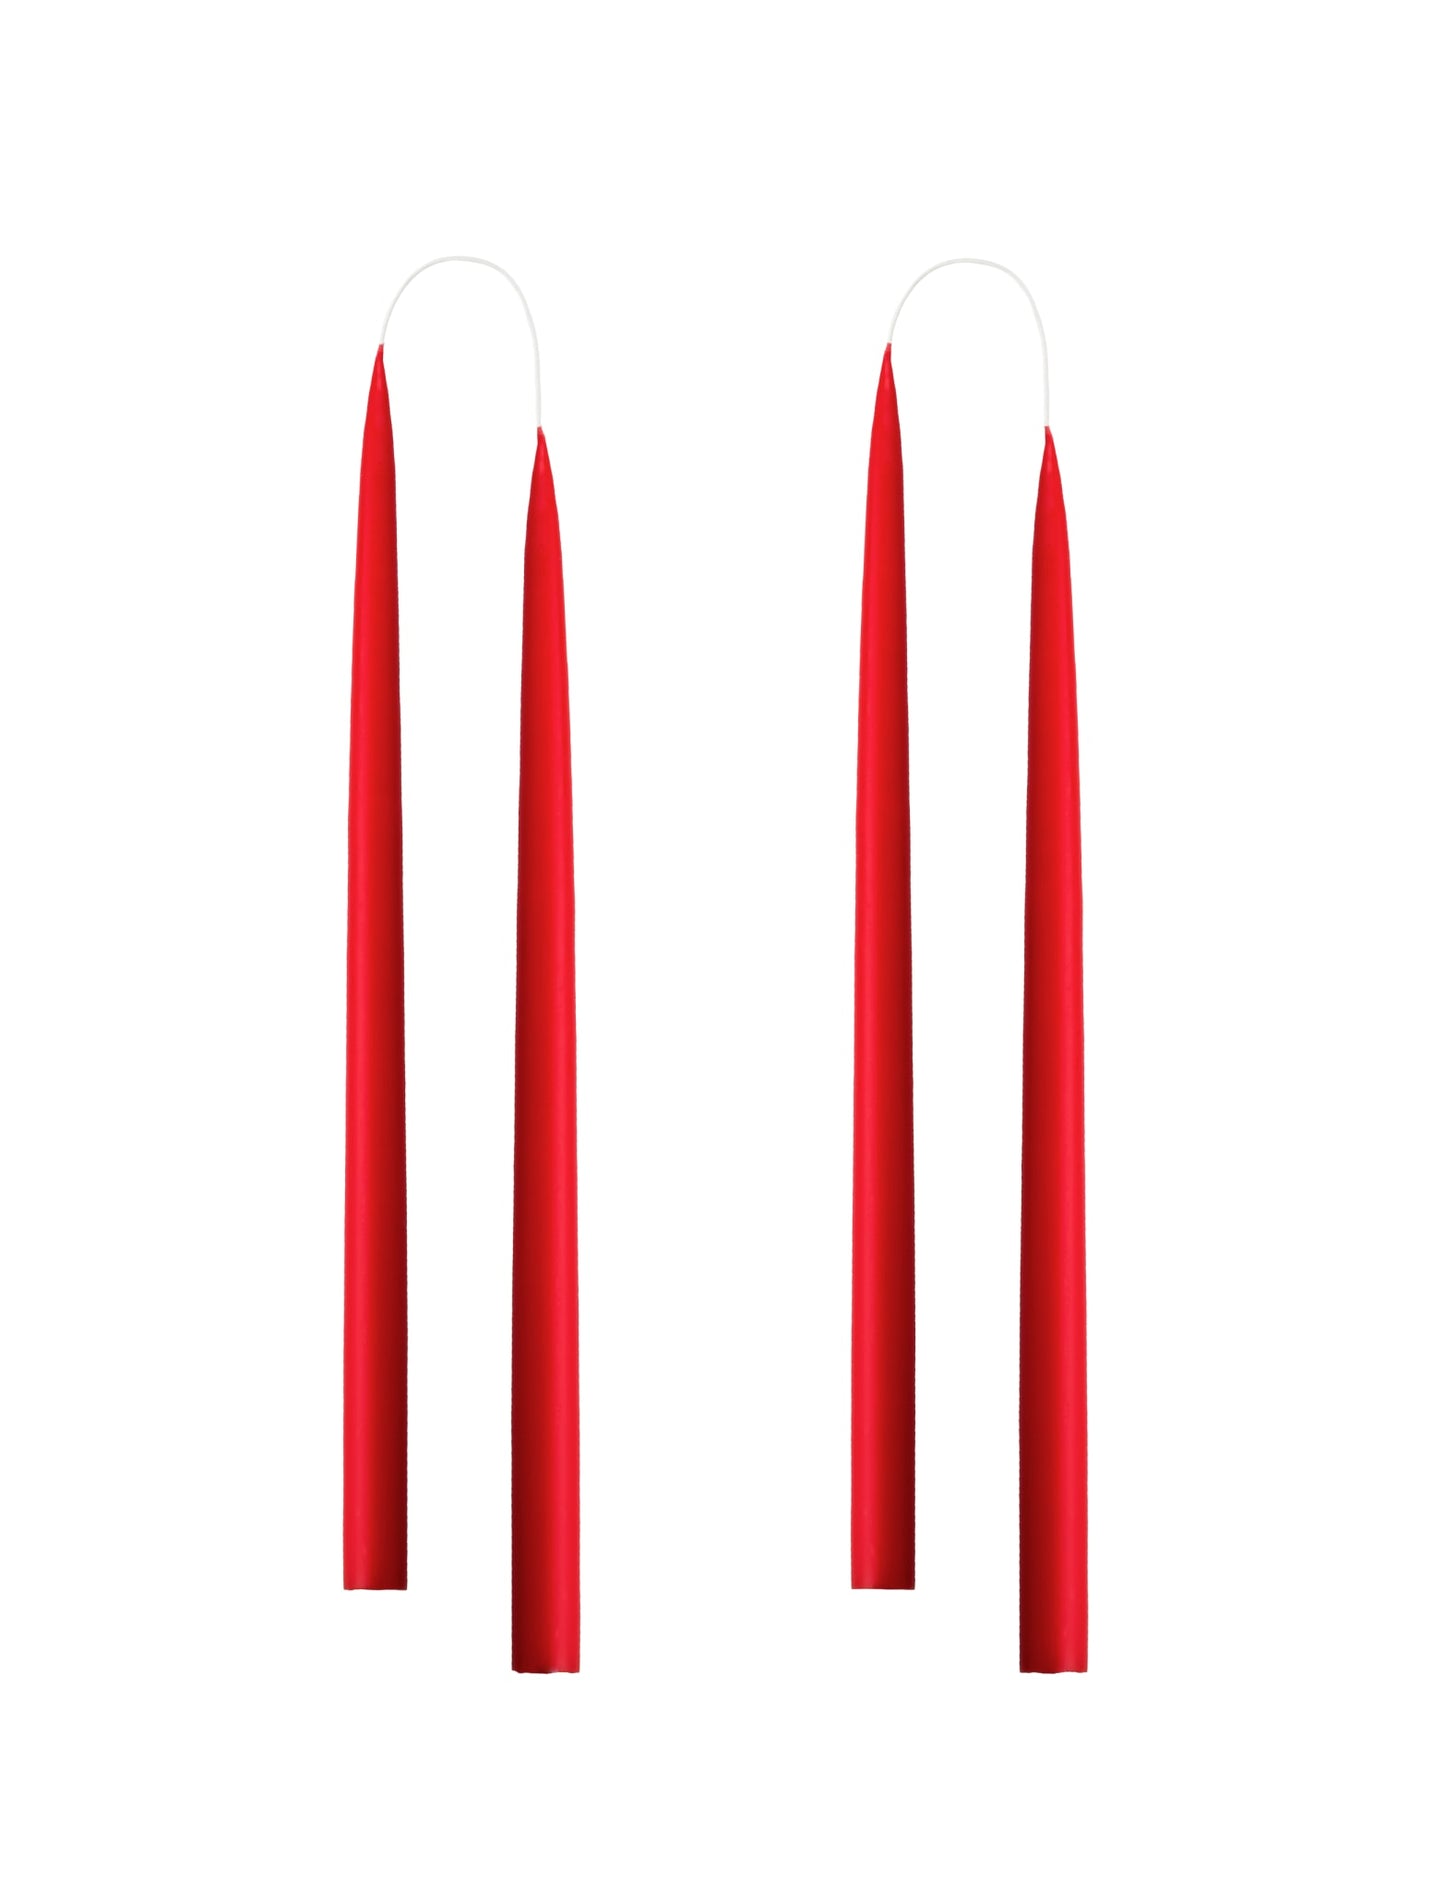 Von Hand getauchte, gefärbte Kerze, im 4er-Pack – 2,2 x 35 cm – Weihnachtsrot #10